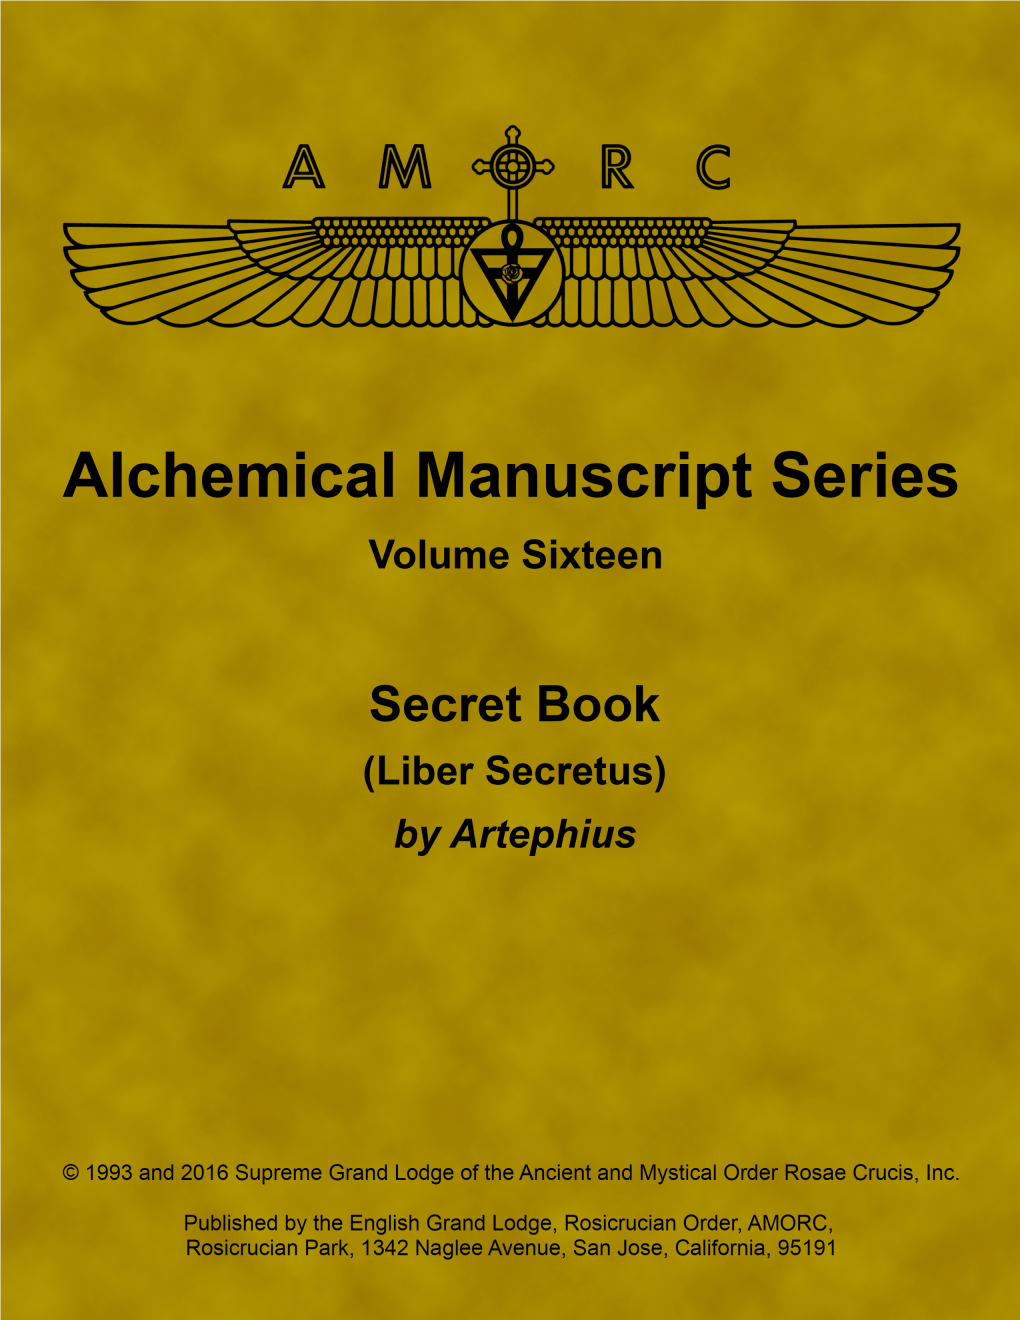 Secret Book (Liber Secretus), by Artephius